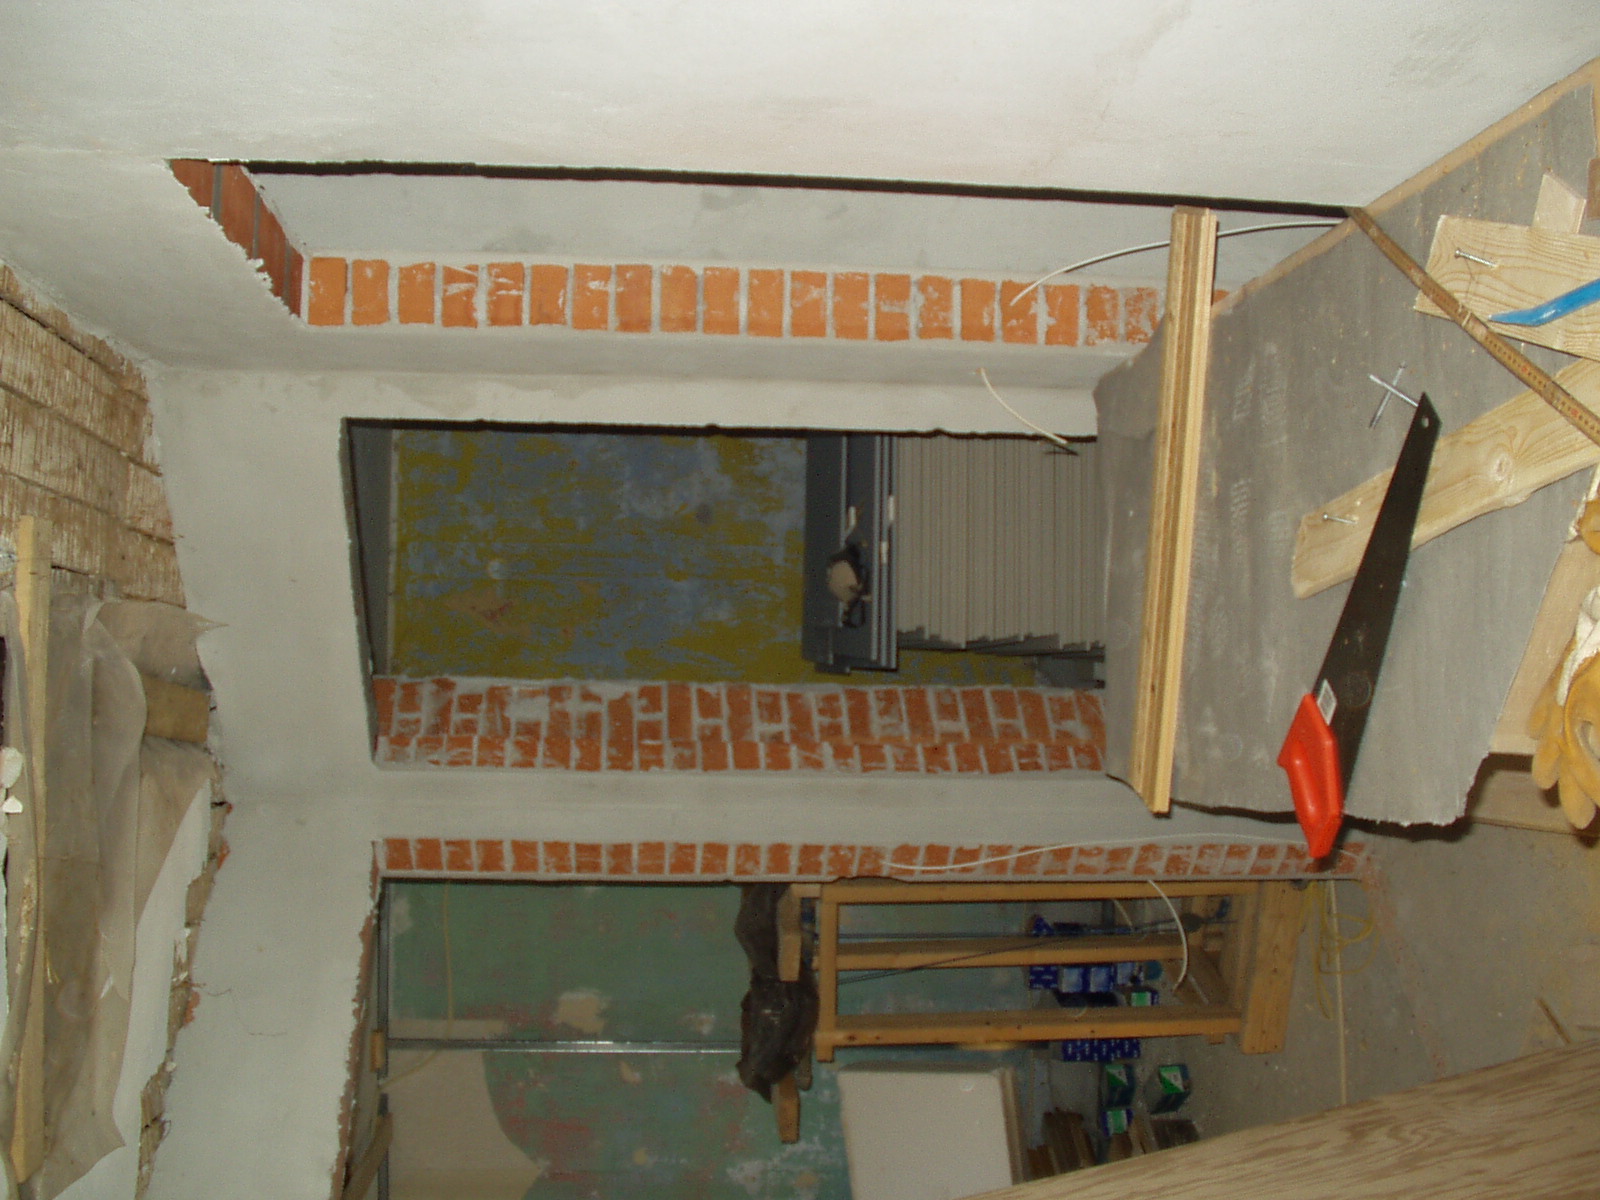 Ombygningen af stuehus